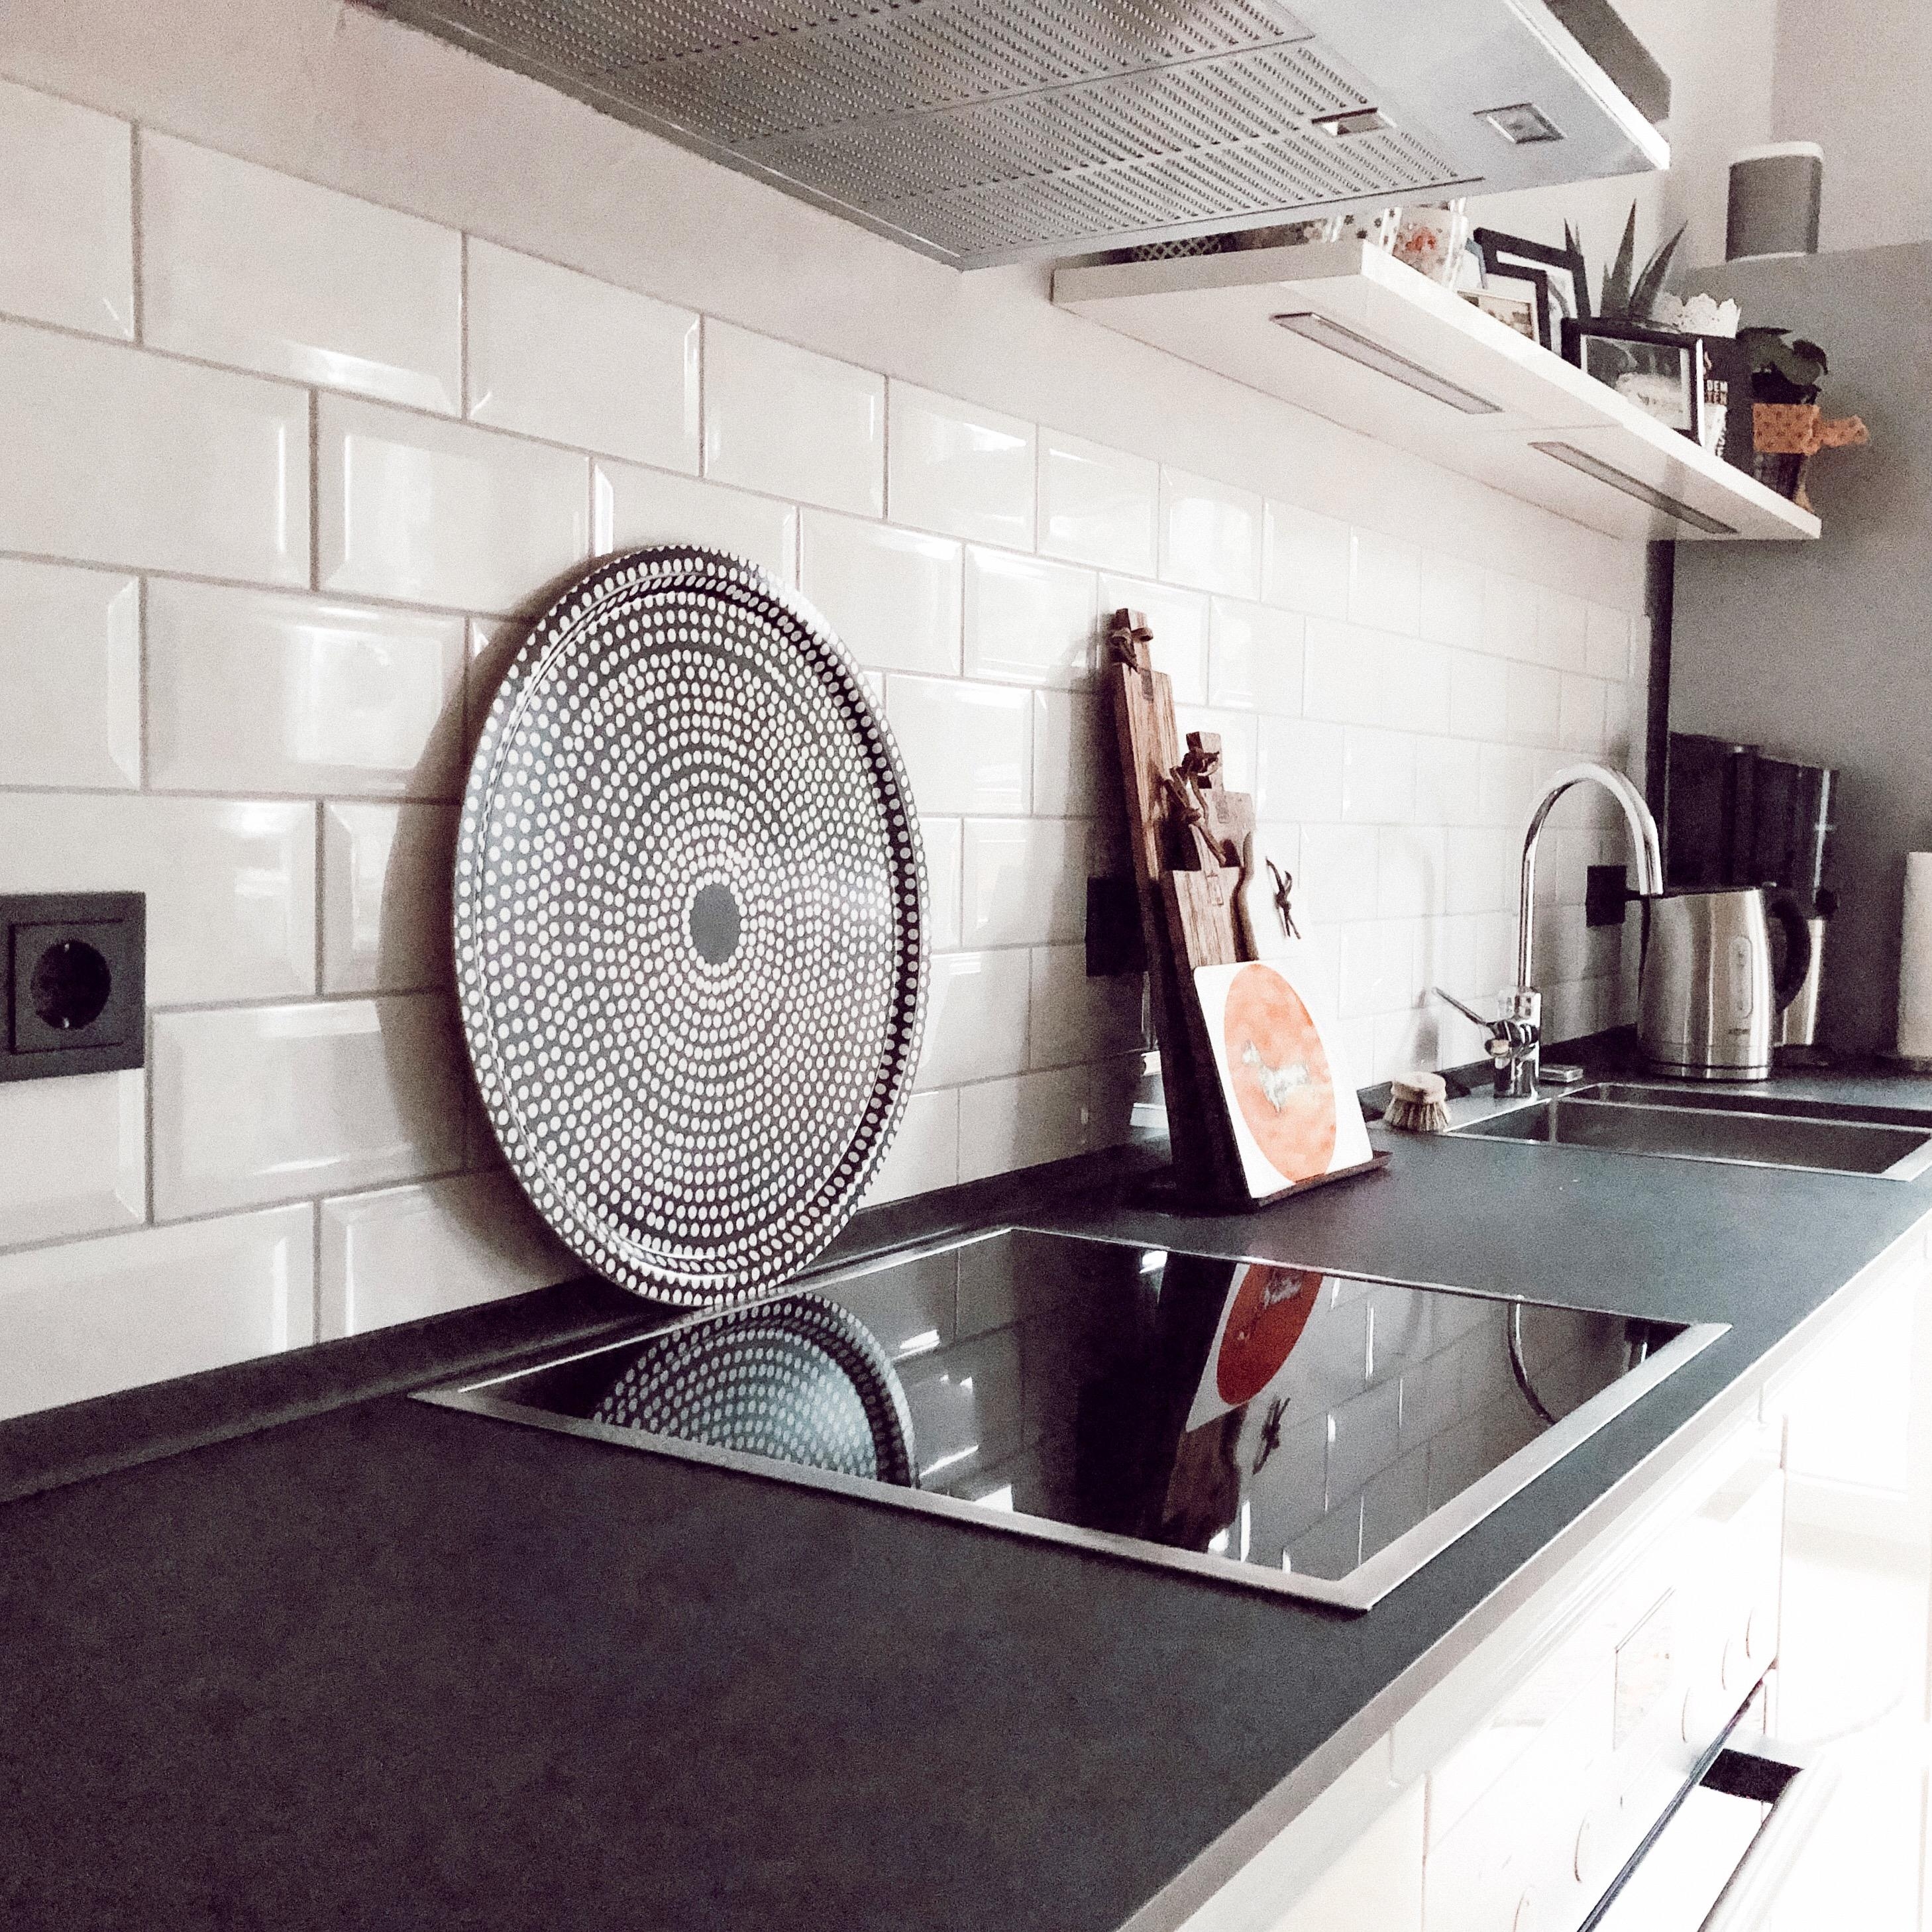 #küche #schwarzundweiß #marimekko #metrofliesen